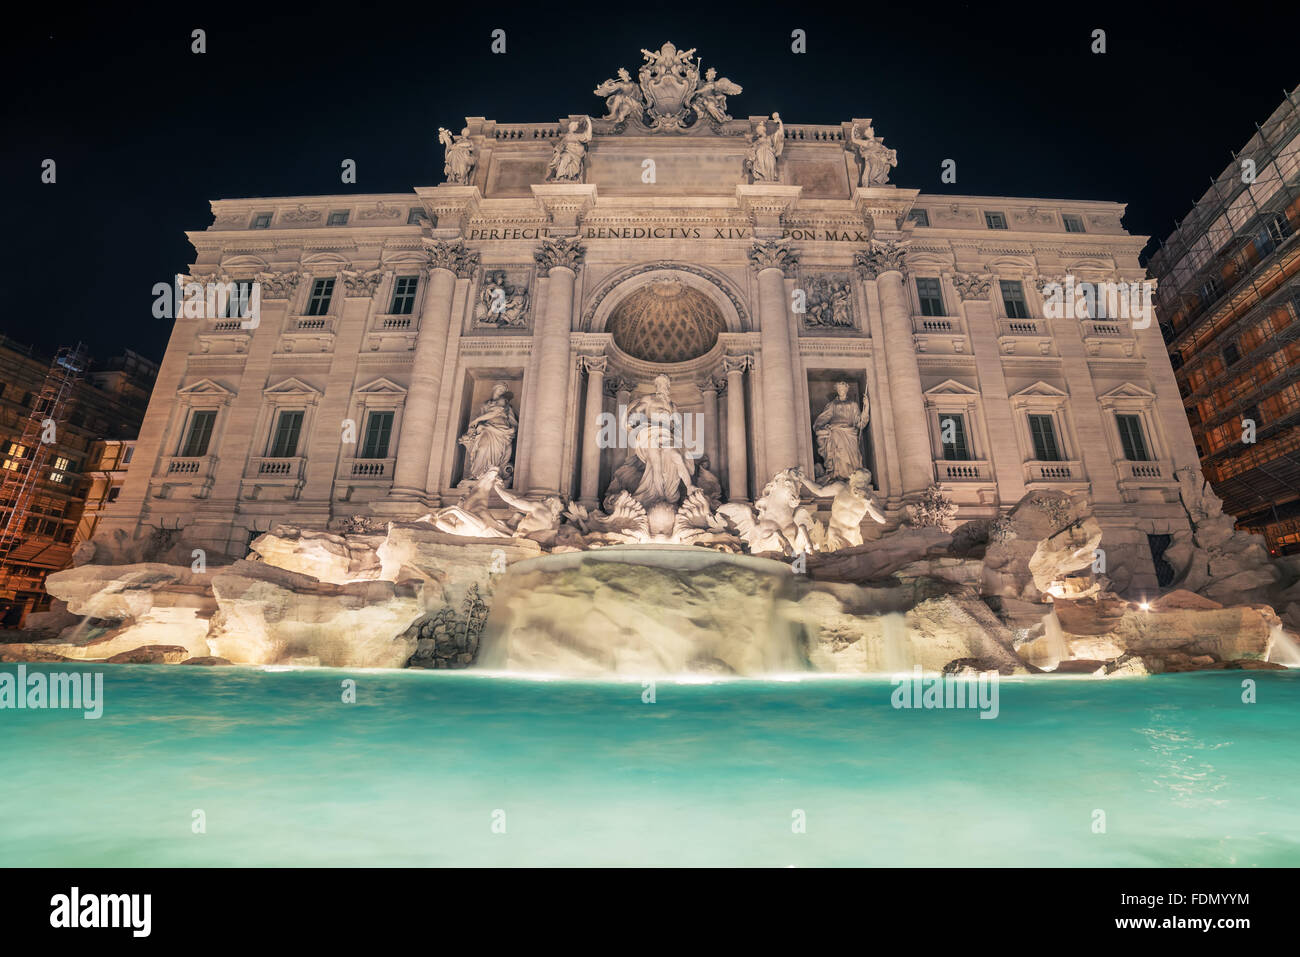 Rome, Italy: Trevi Fountain, Italian: Fontana di Trevi, at night Stock Photo